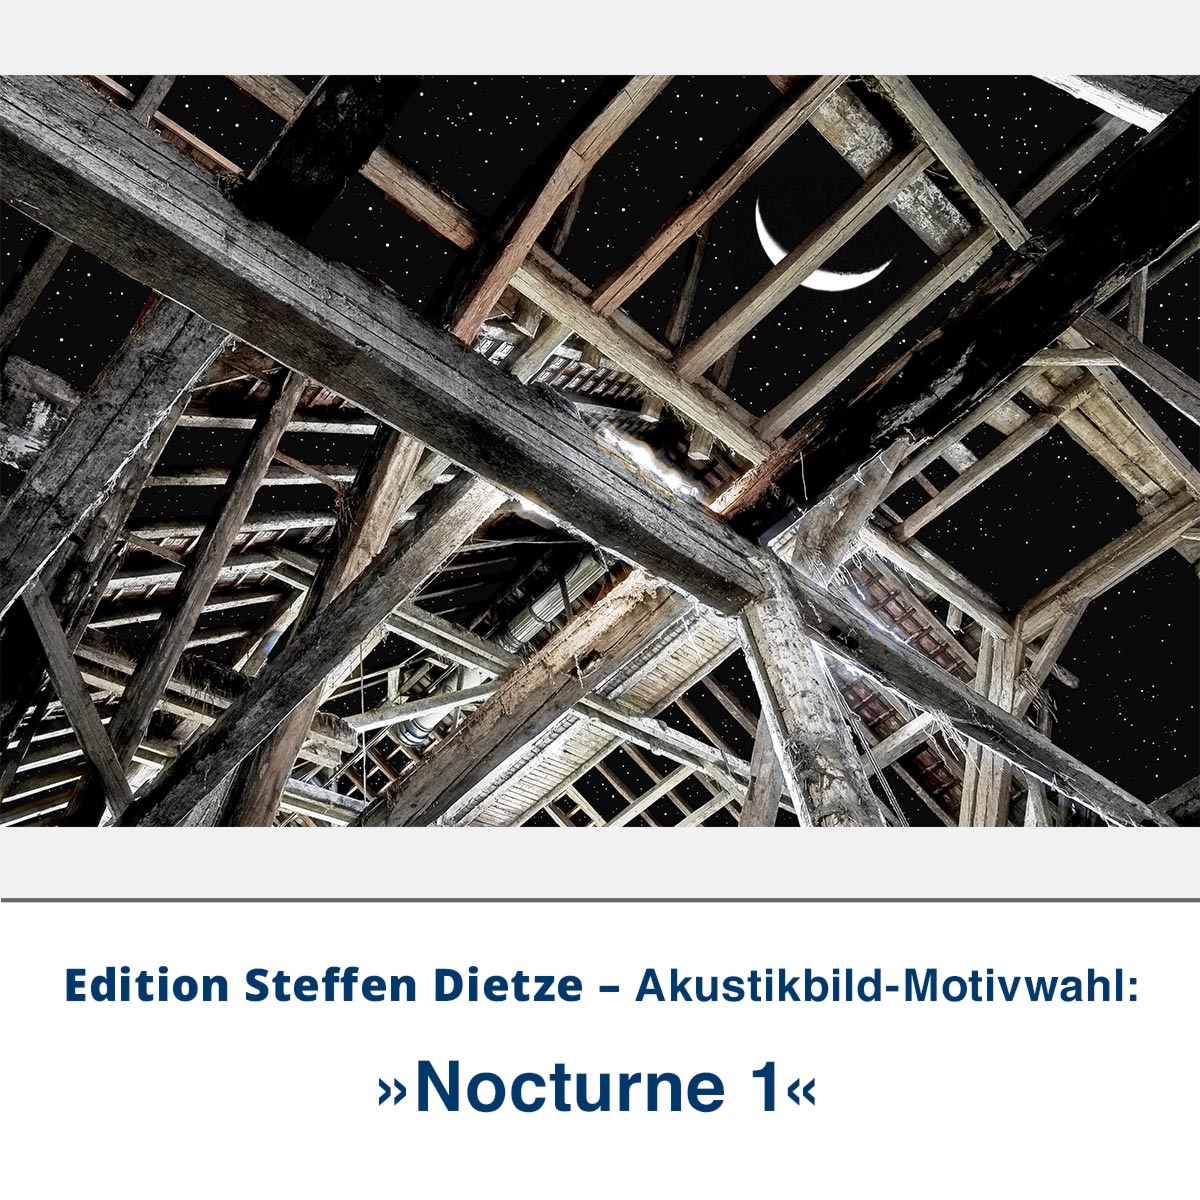 Akustikbild »Nocturne 1«, Edition Steffen Dietze